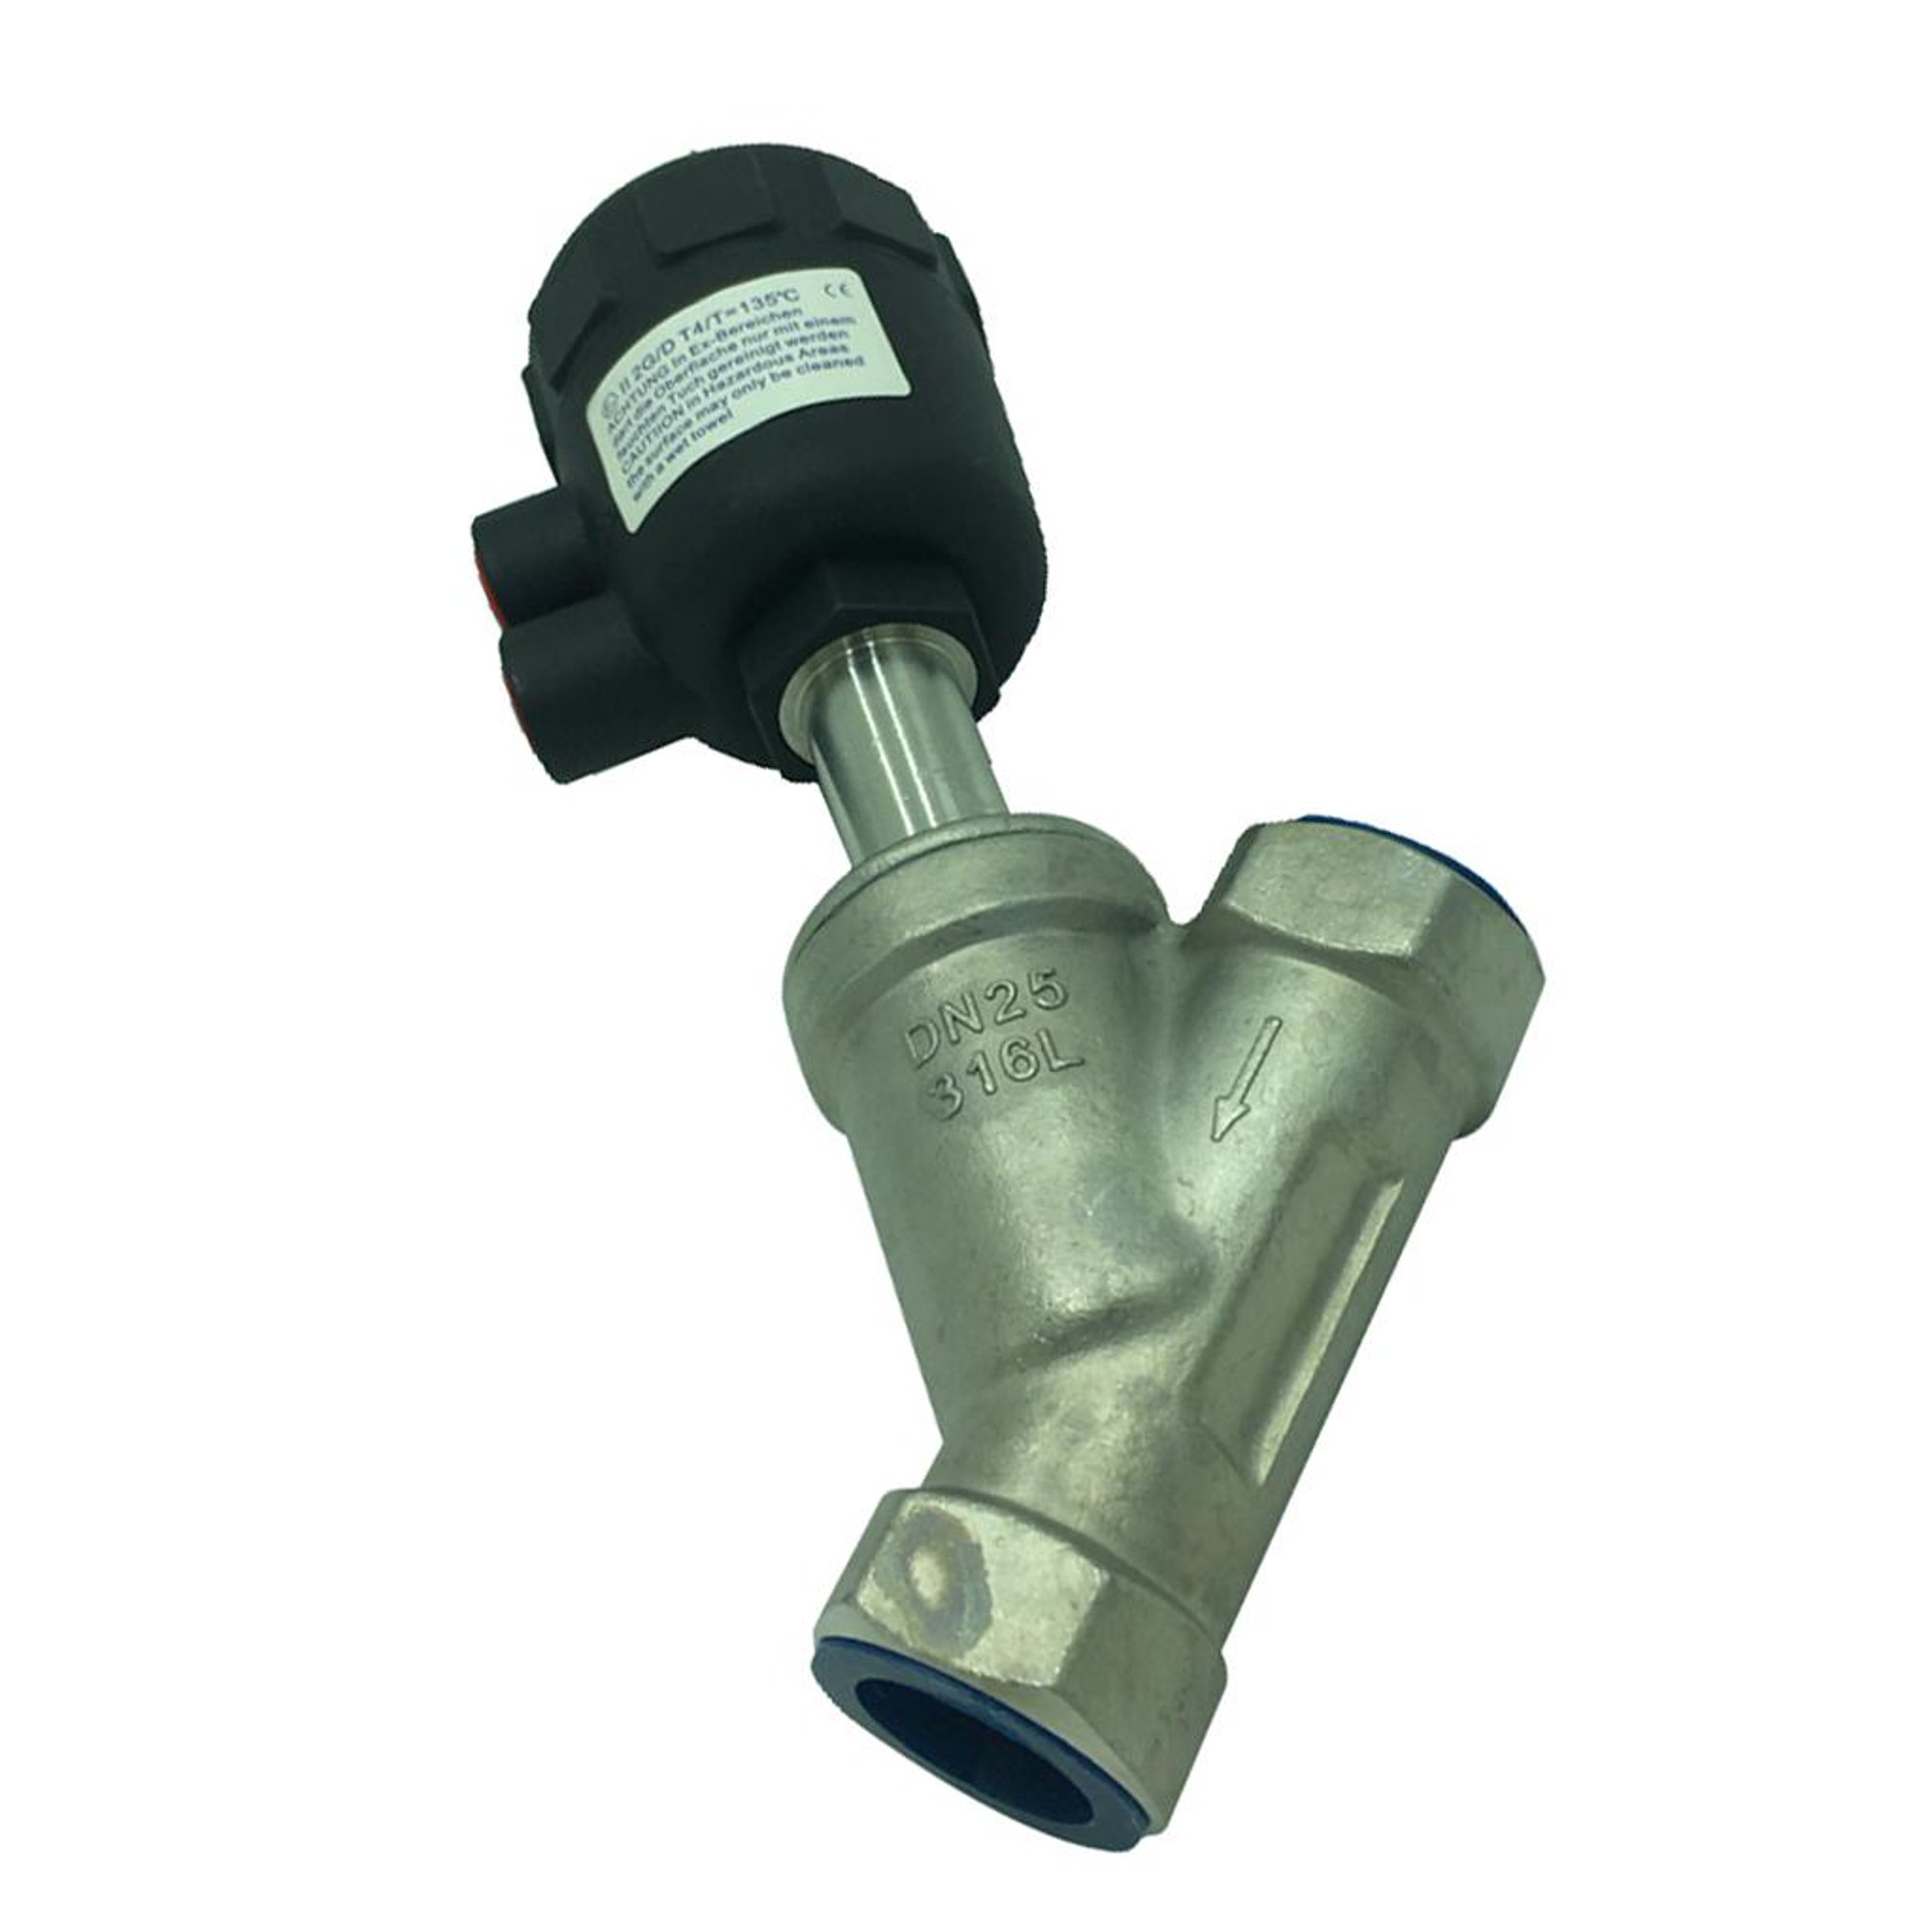 Cabezal de ducha fijo de alta presión, cabezal de ducha de lluvia ajustable  para ahorro de agua, 5 configuraciones para un baño SPA relajante, cromo  pulido, antical, 2.5 GPM, Adepaton WLJ-0647